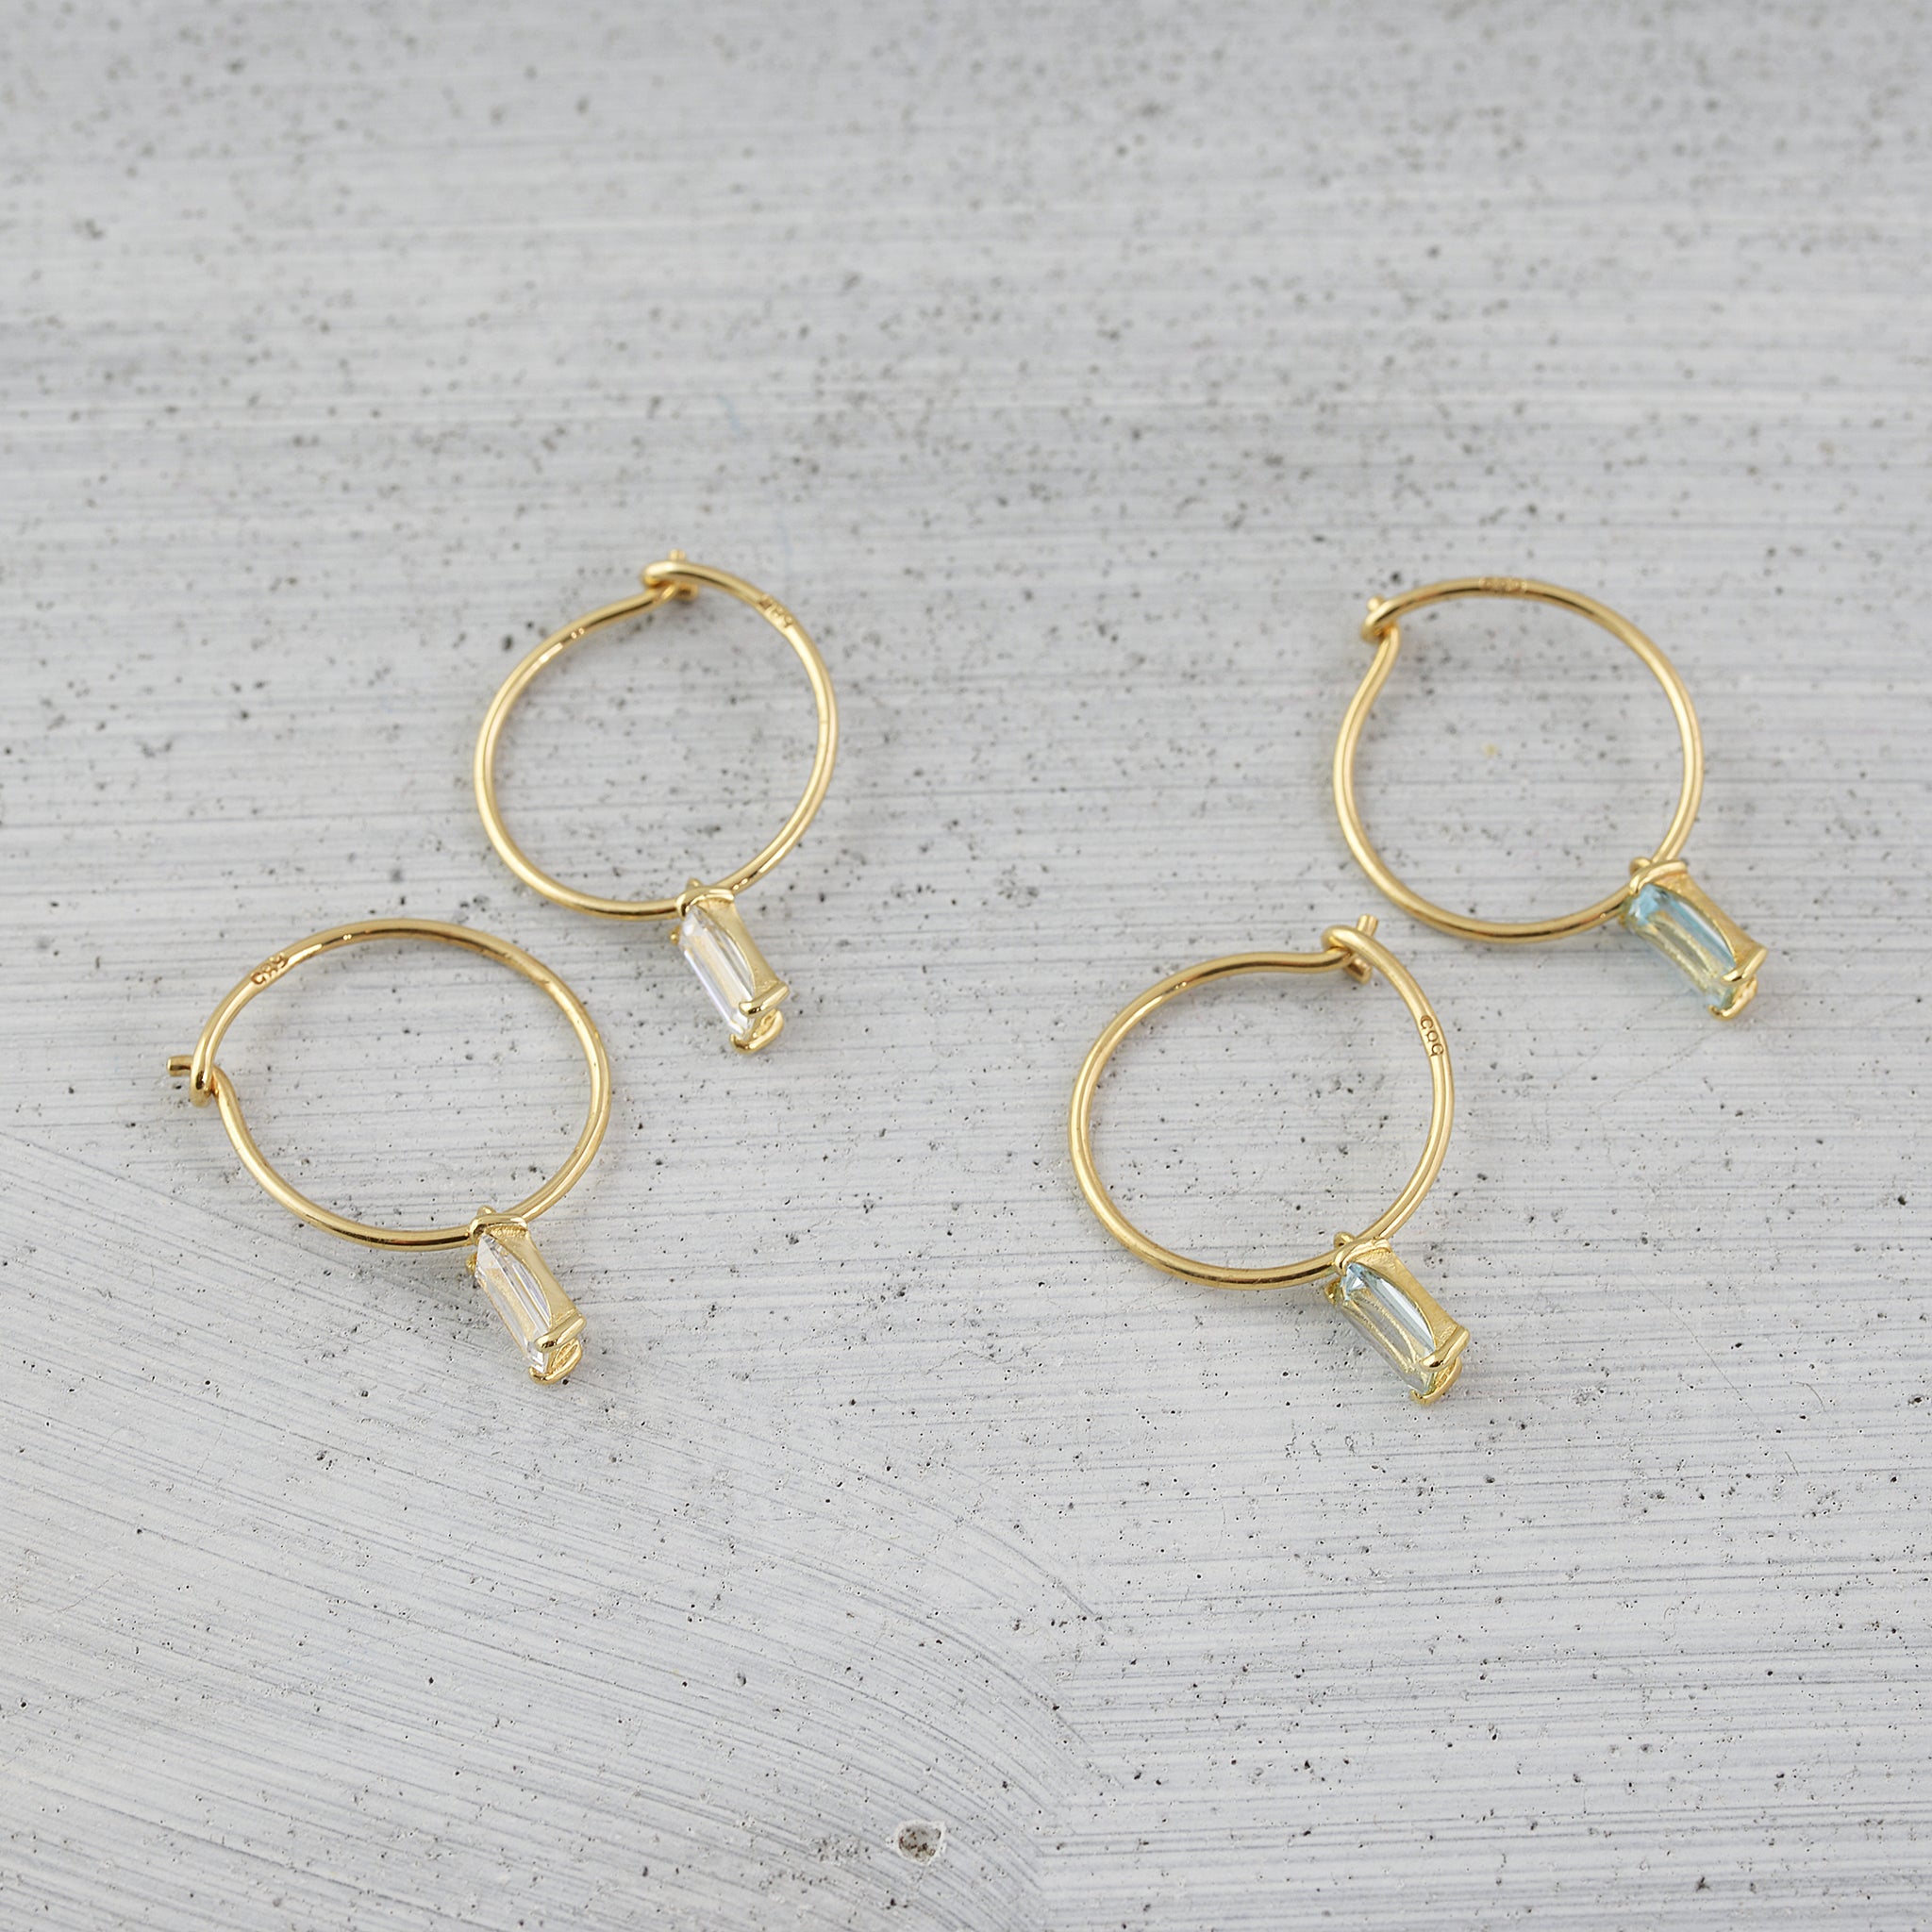 Allure baguette wire hoop Earring (single) - 14K/ 18K Gold